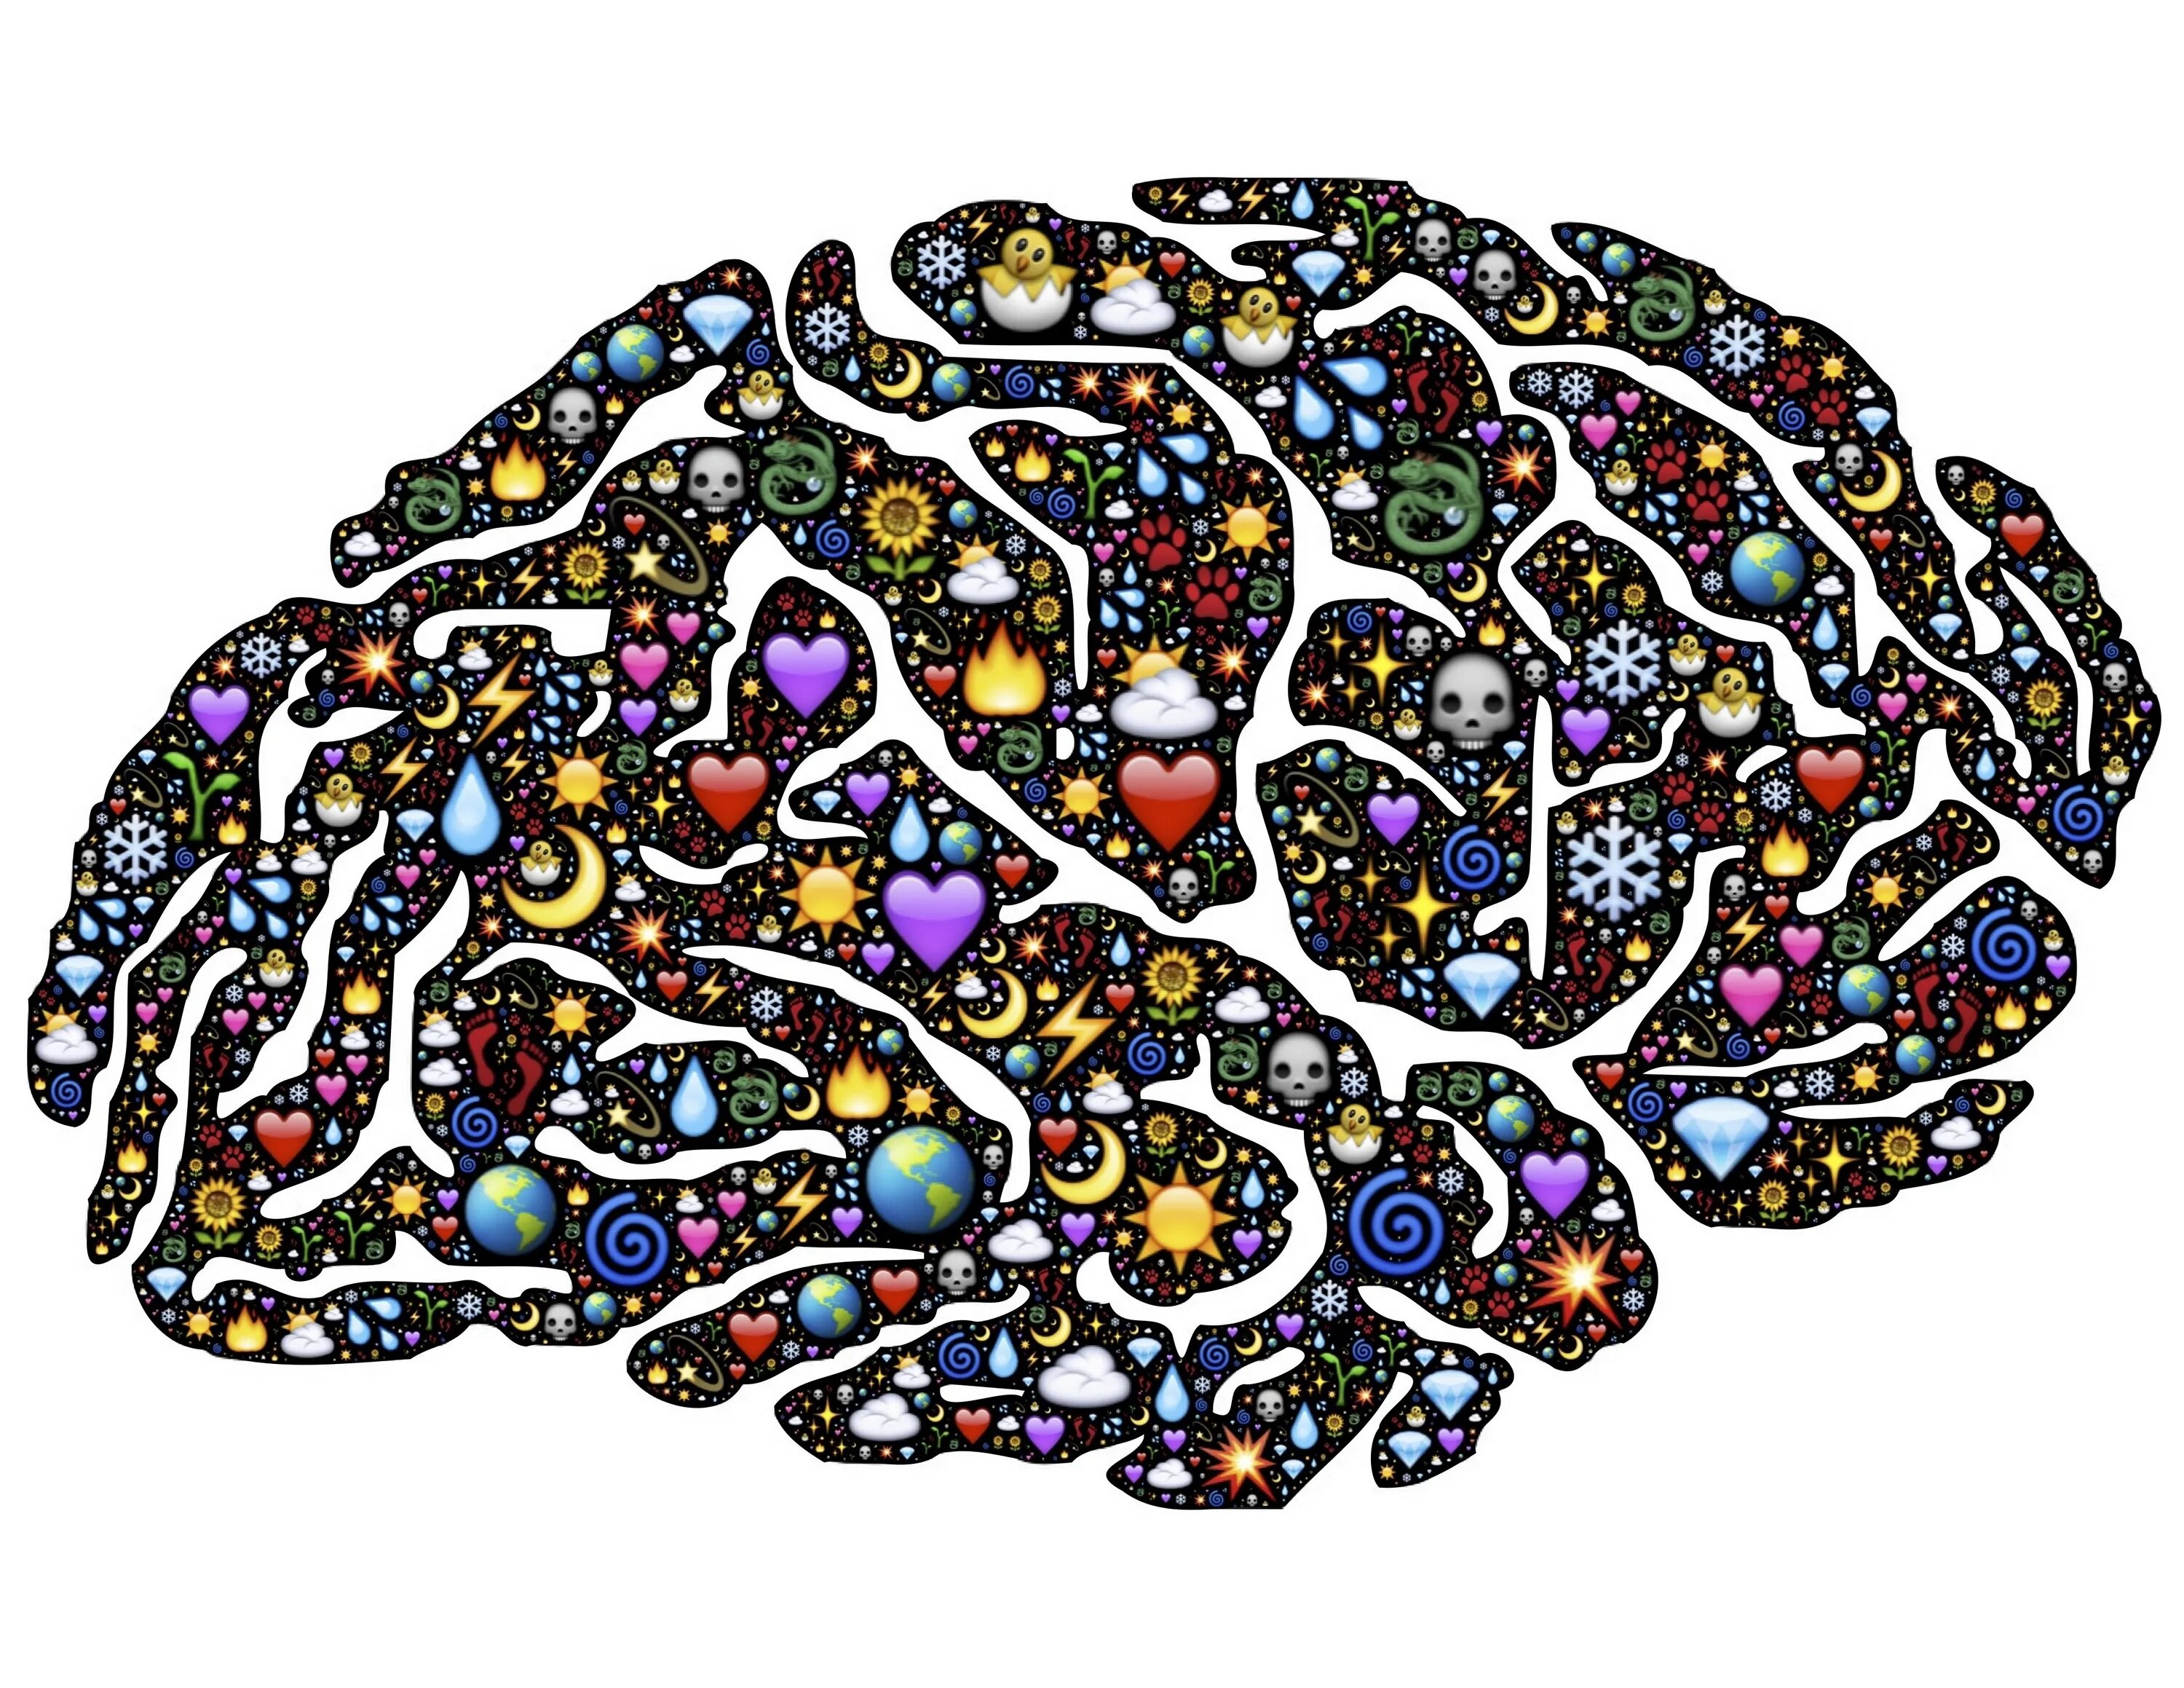 Colored brains. Мозг Вселенная. Вселенский мозг. Мозг рисовать. Арт головного мозга и Вселенной.